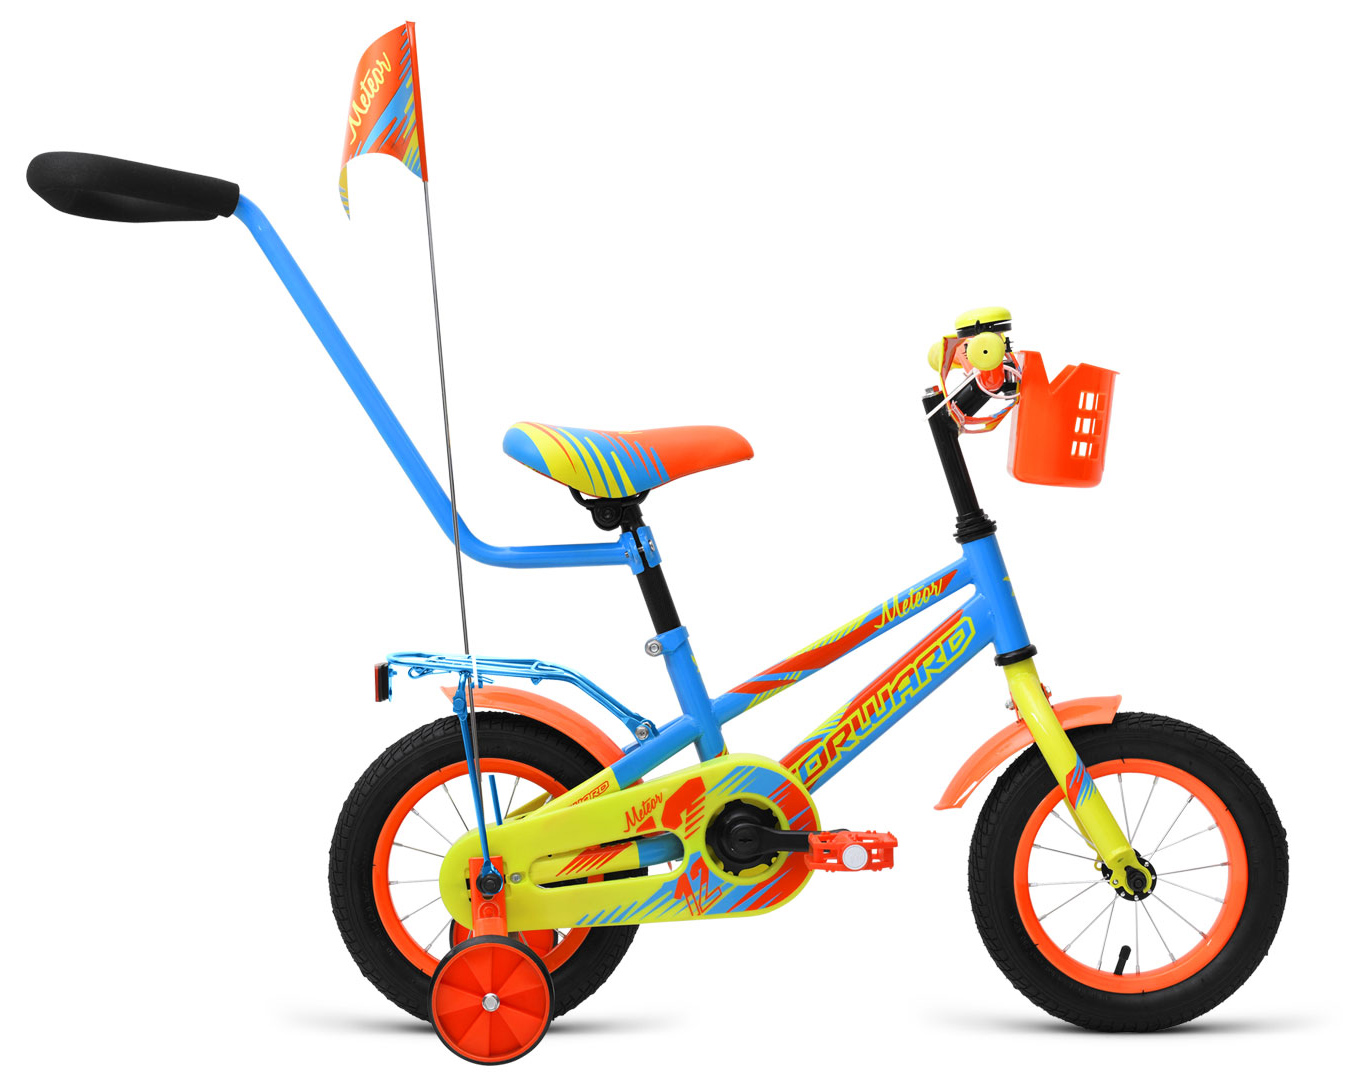  Отзывы о Трехколесный детский велосипед Forward Meteor 12 2019